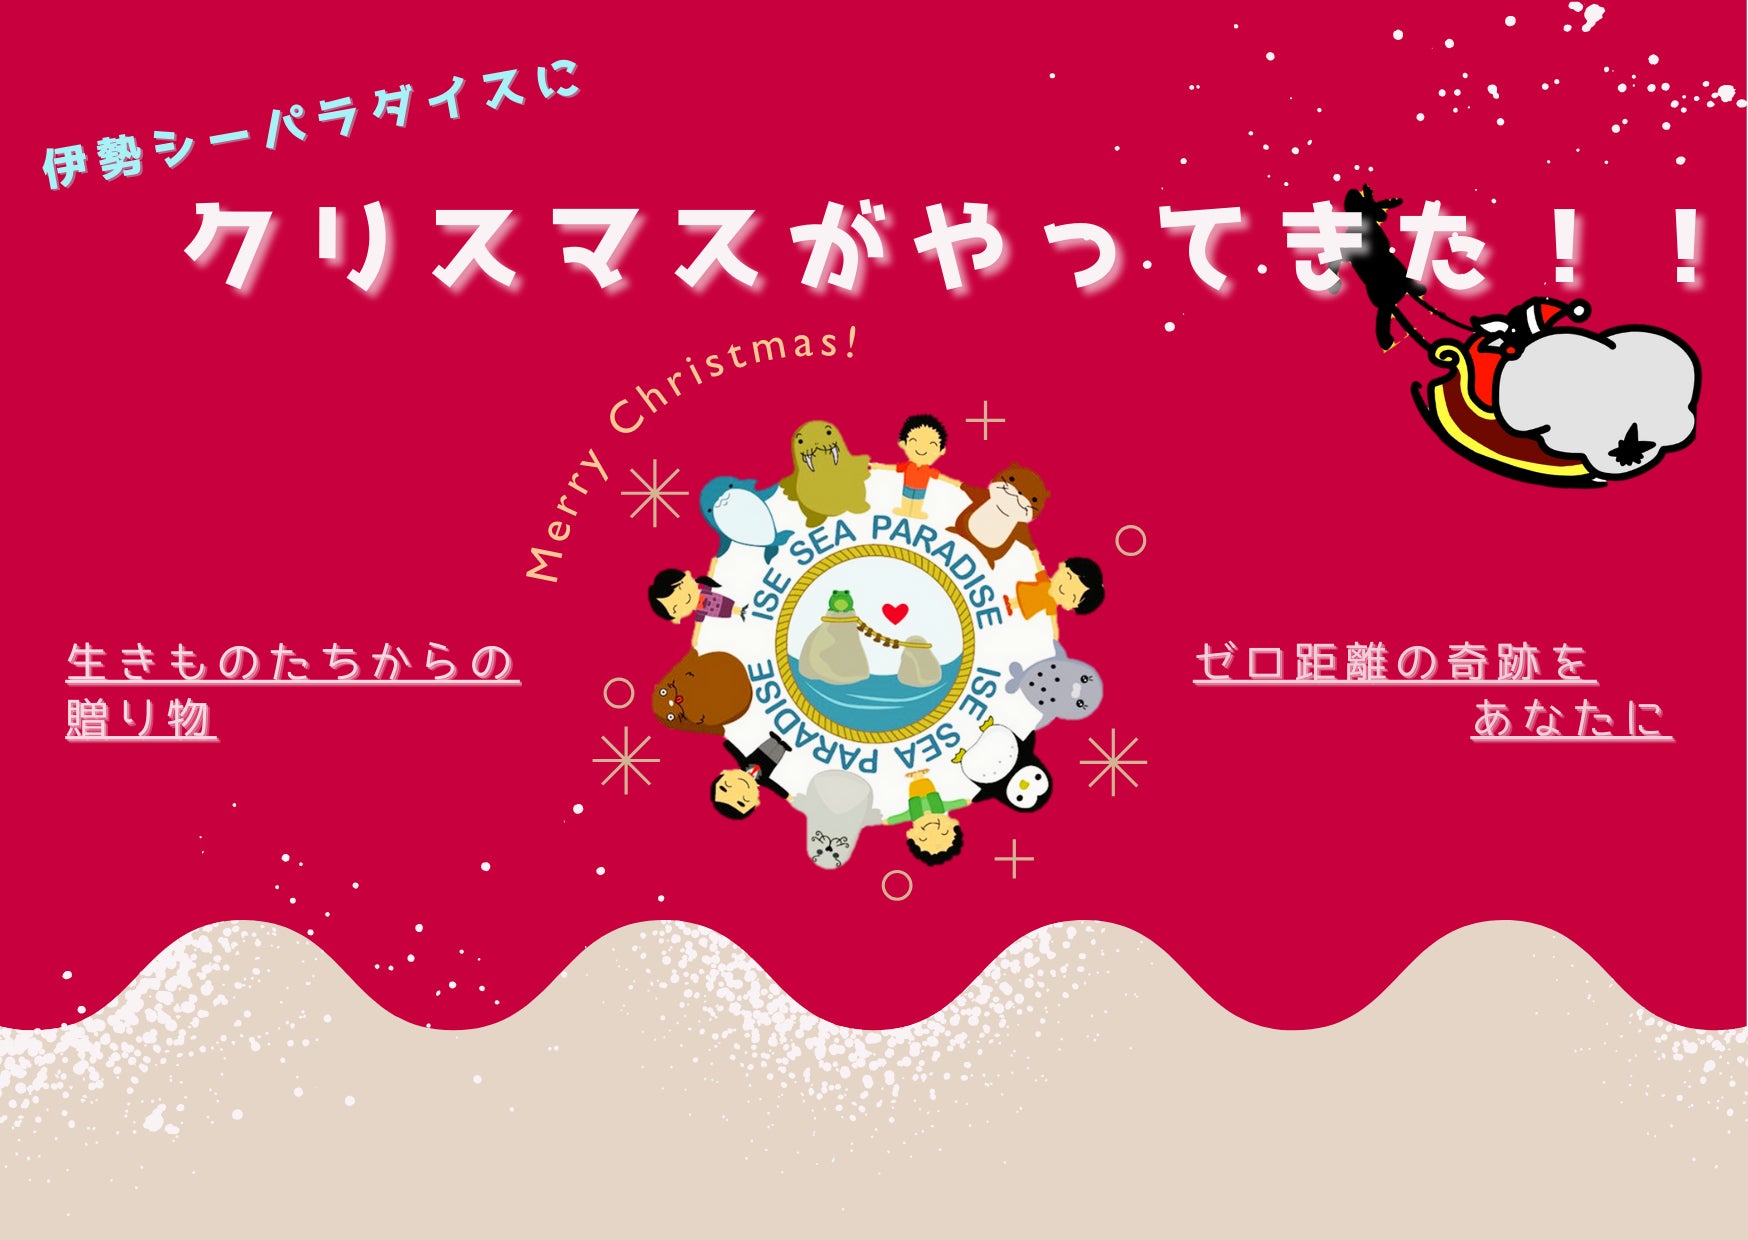 愛媛県松山市「bake shop offrir」がクリスマス限定商品の販売を開始